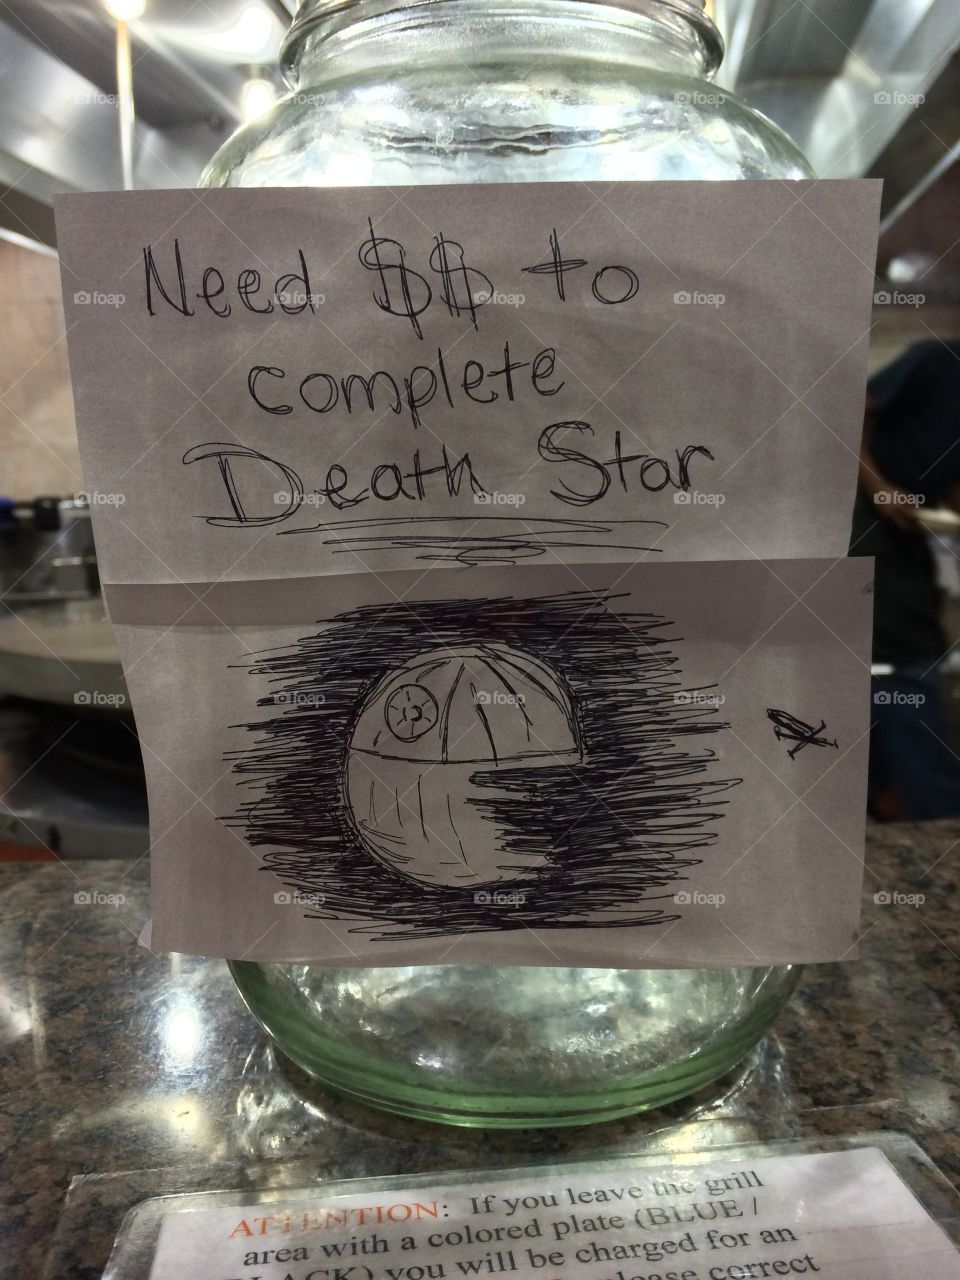 Must...fix...death star